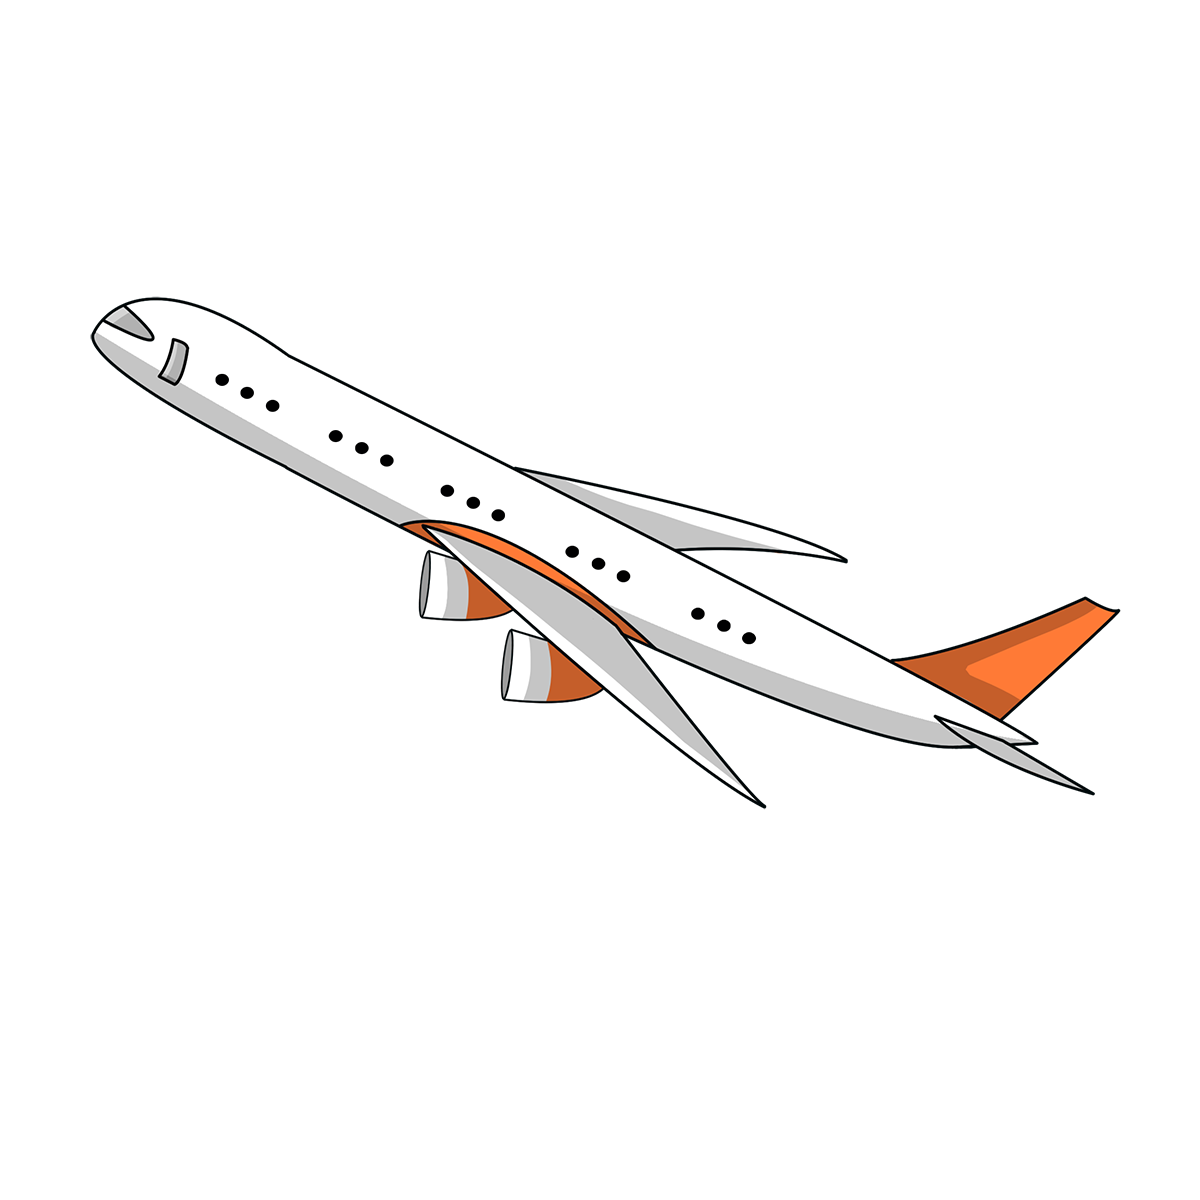 ภาพถ่าย PNG ของสายการบิน